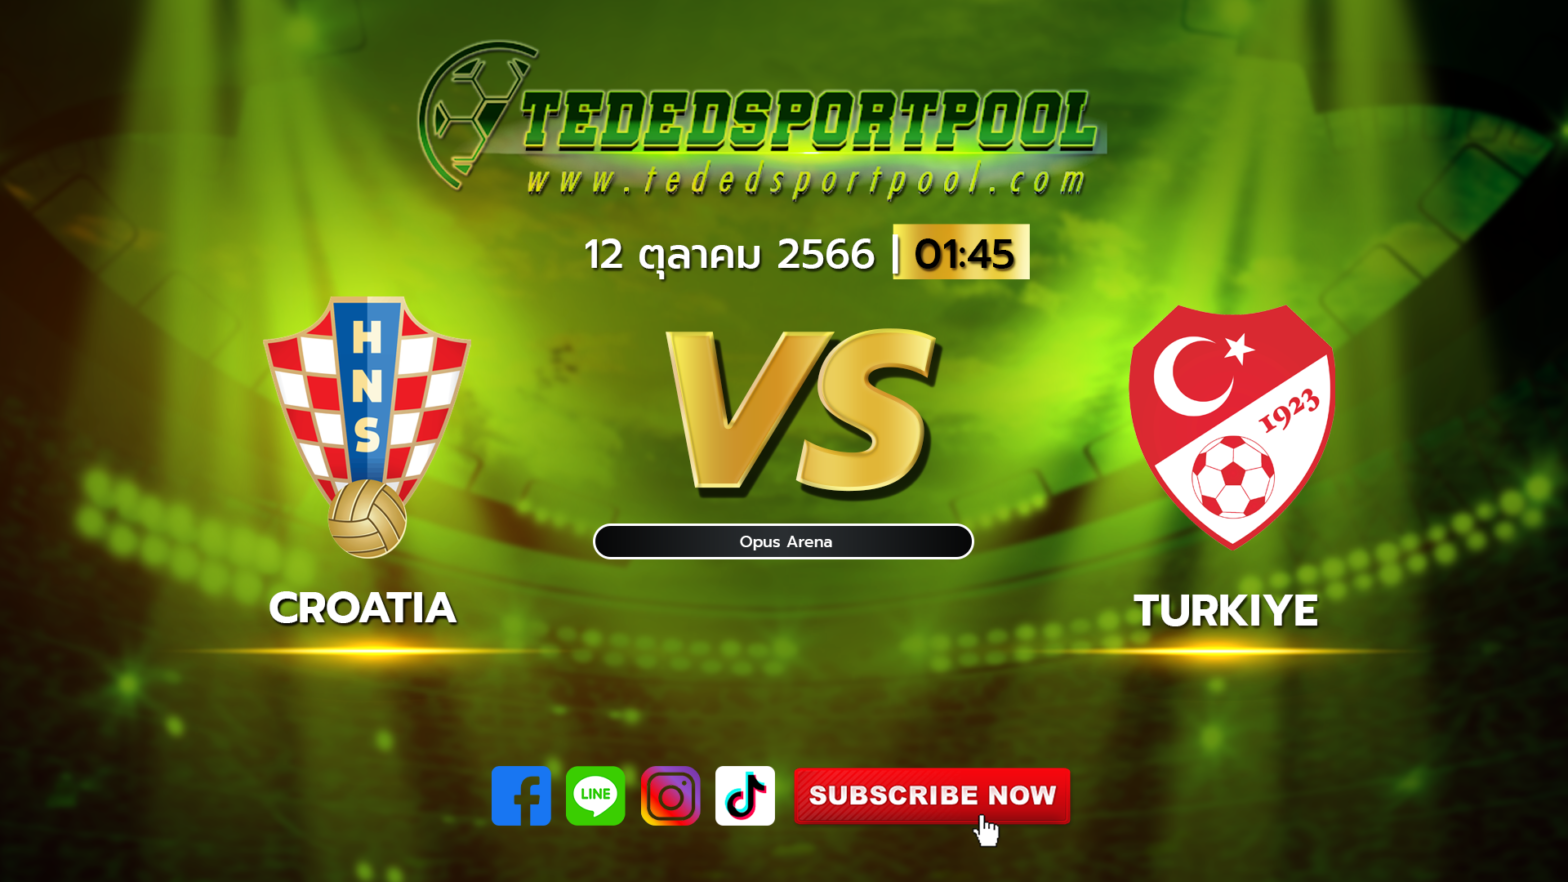 Croatia_vs_Turkiye